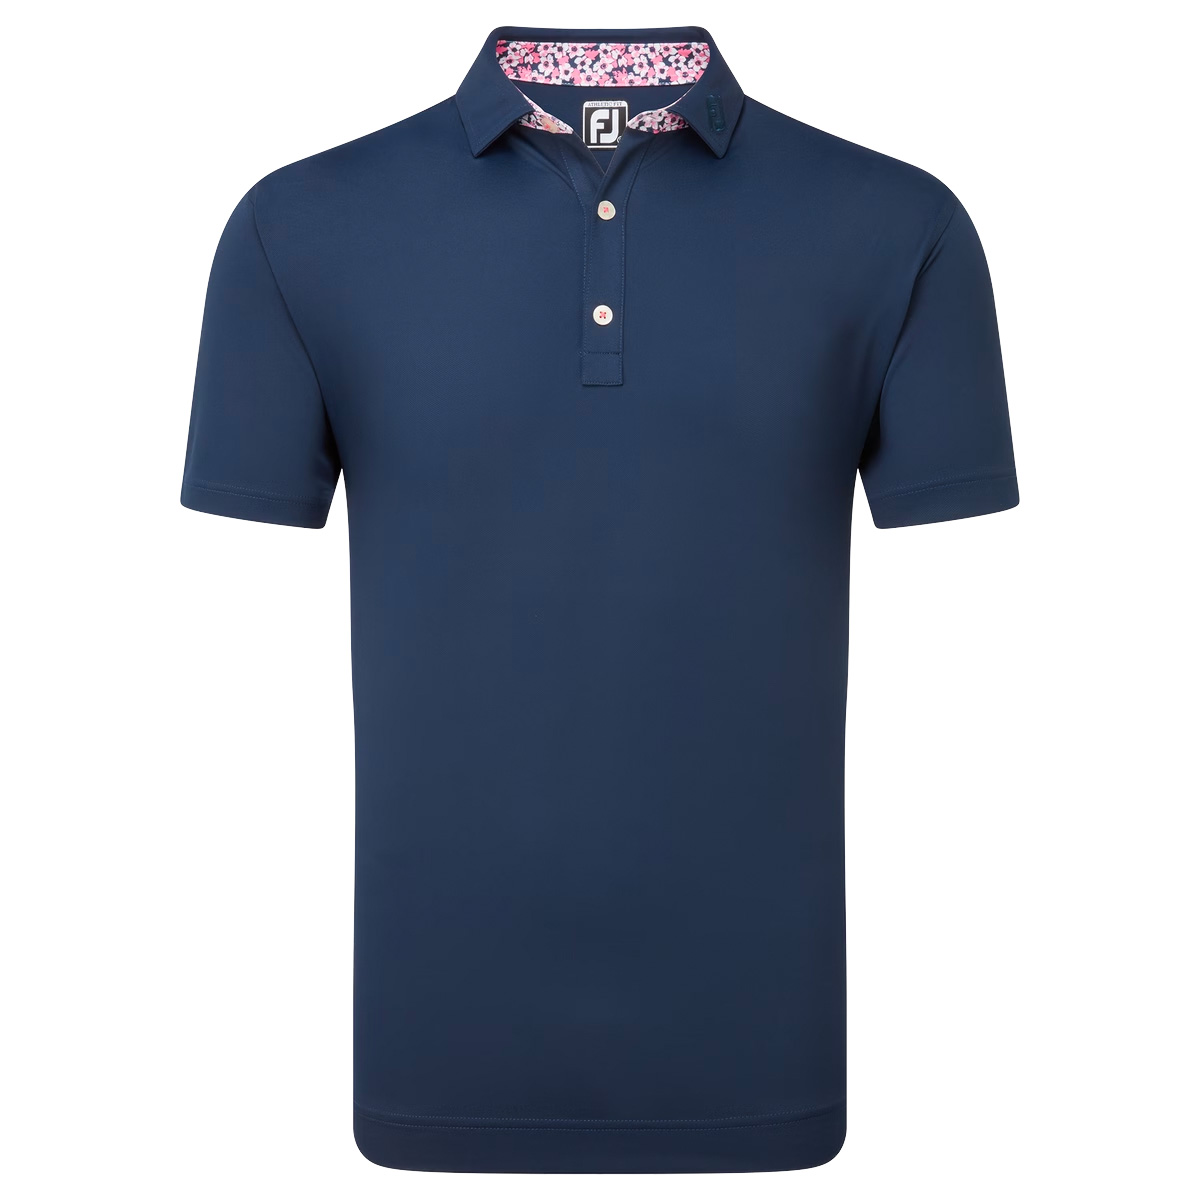 FootJoy EU Solid with Primrose Trim Mens Golf Polo Shirt  - Navy